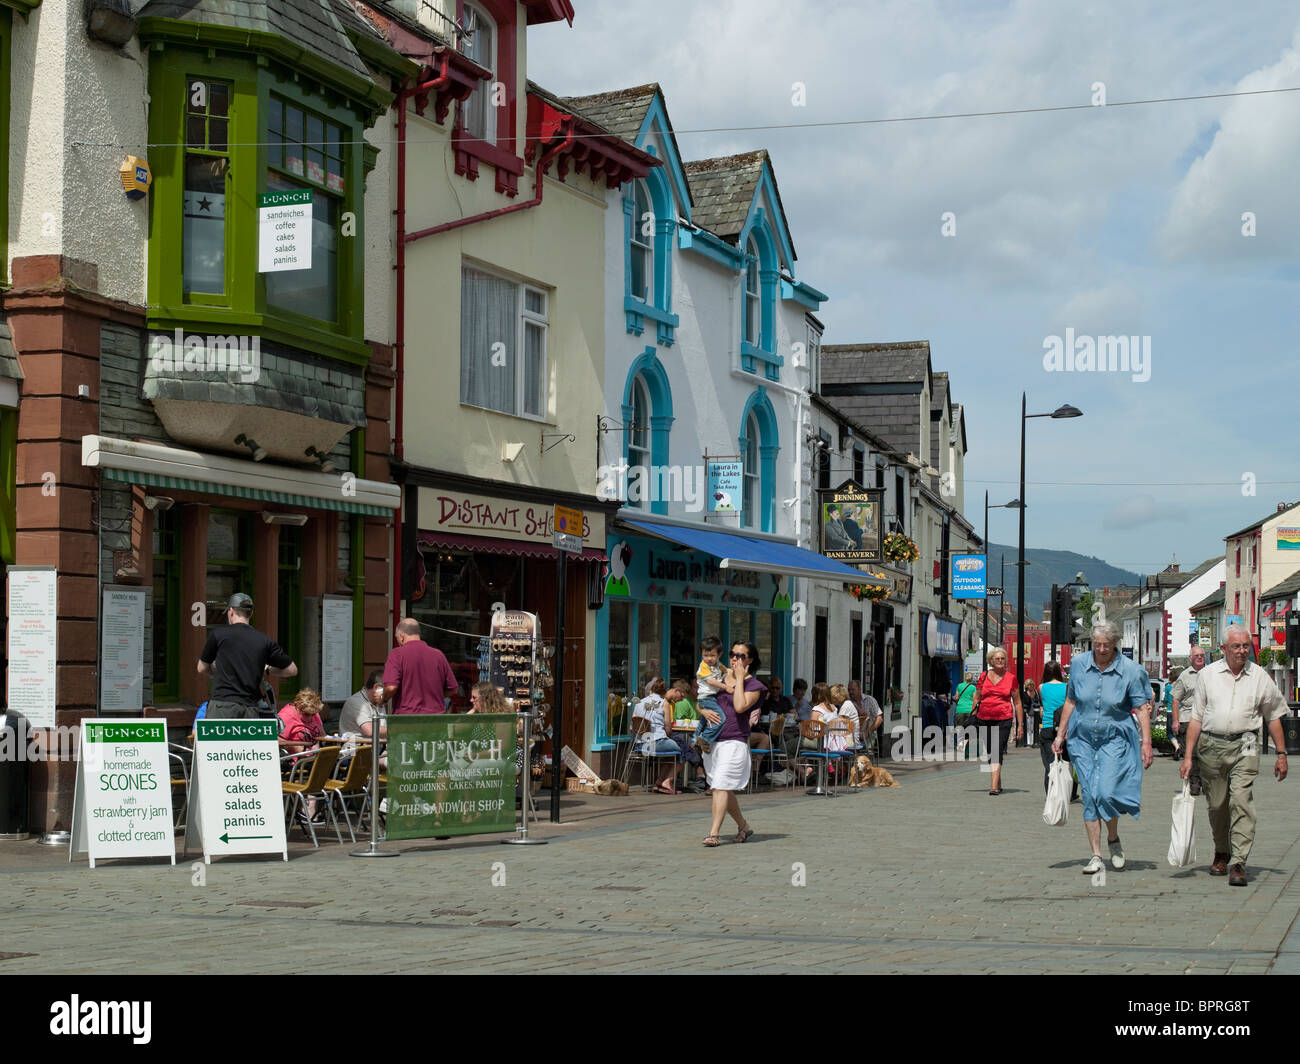 Persone turisti visitatori in Piazza del mercato in estate Keswick Cumbria Inghilterra Regno Unito Gran Bretagna GB Foto Stock